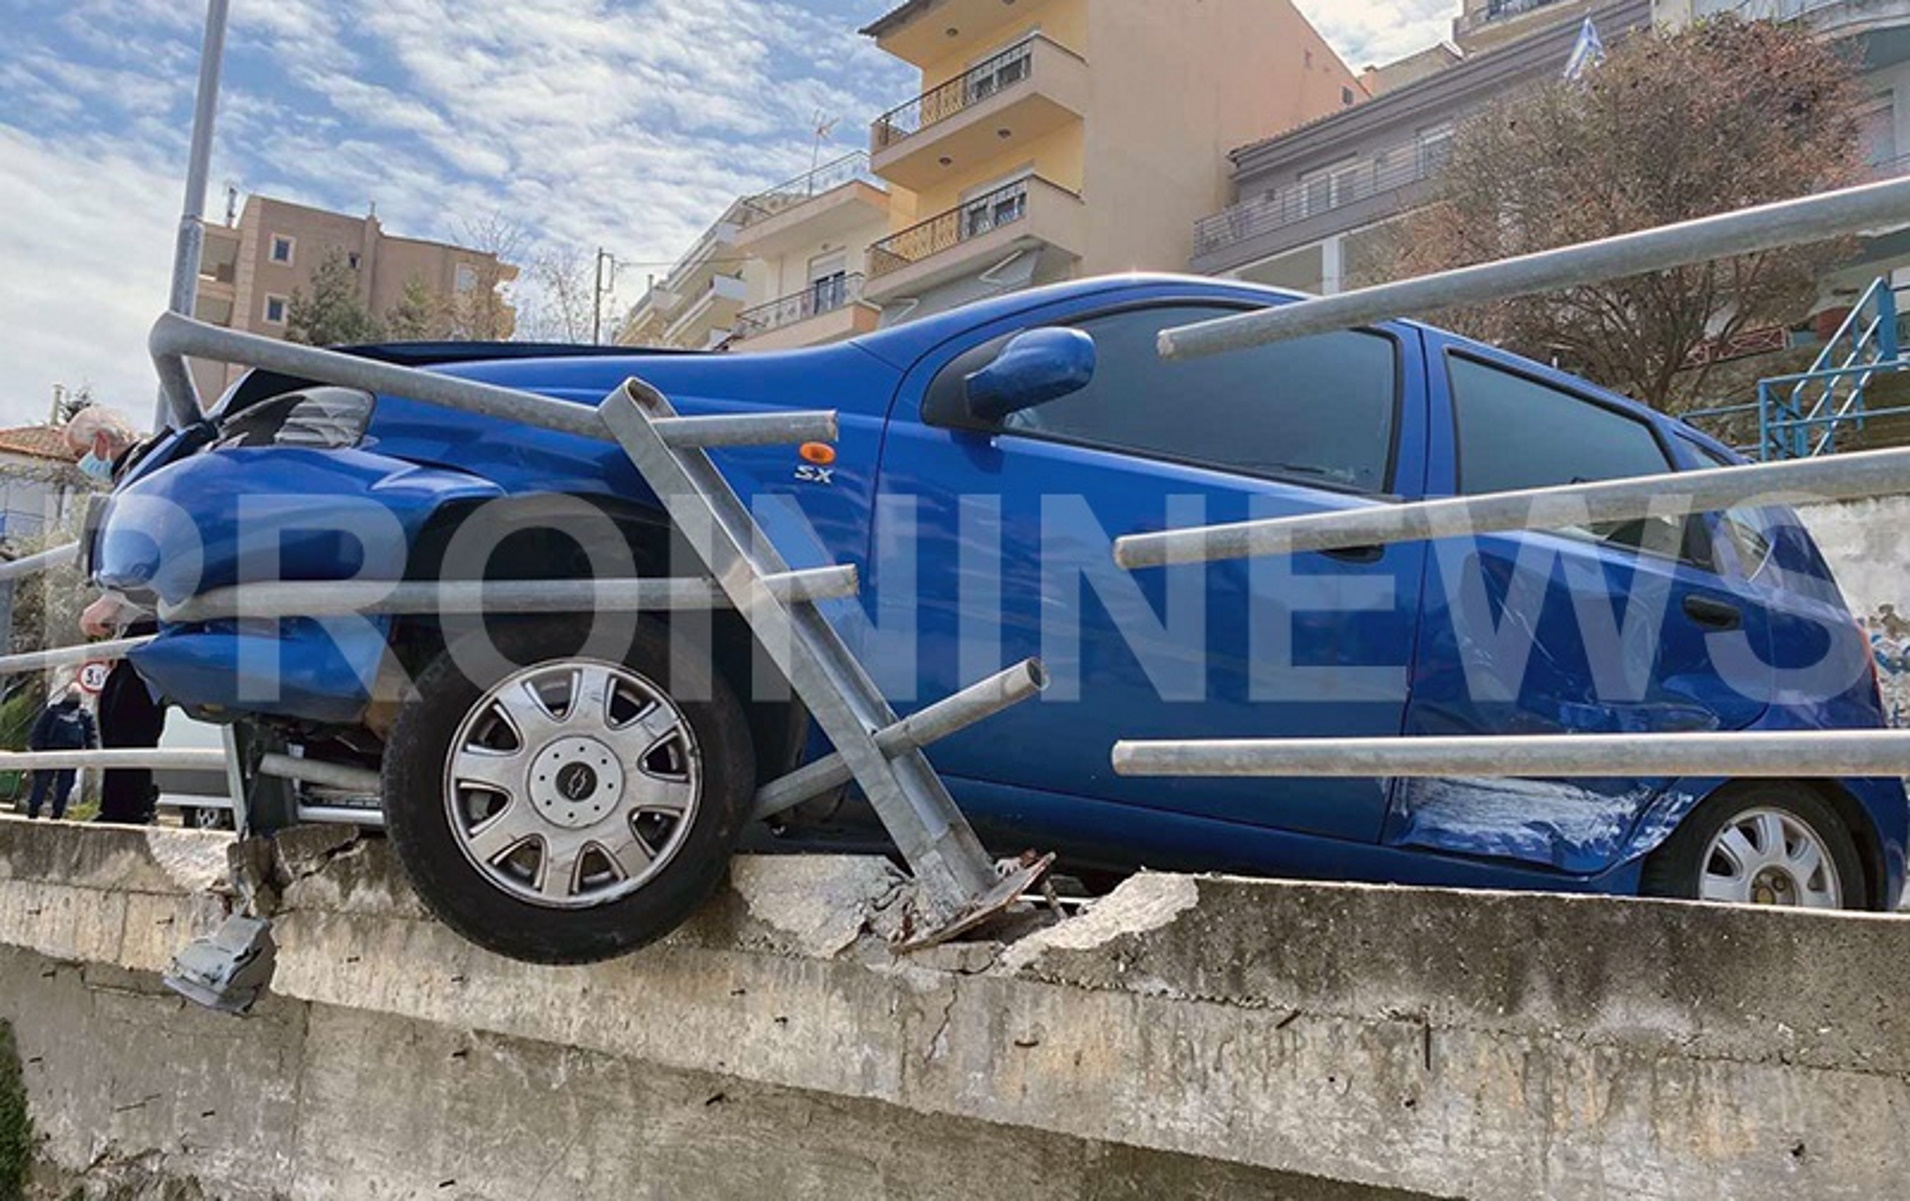 Καβάλα: Αυτοκίνητο κρέμεται στην άκρη γέφυρας – Φωτογραφίες που σοκάρουν